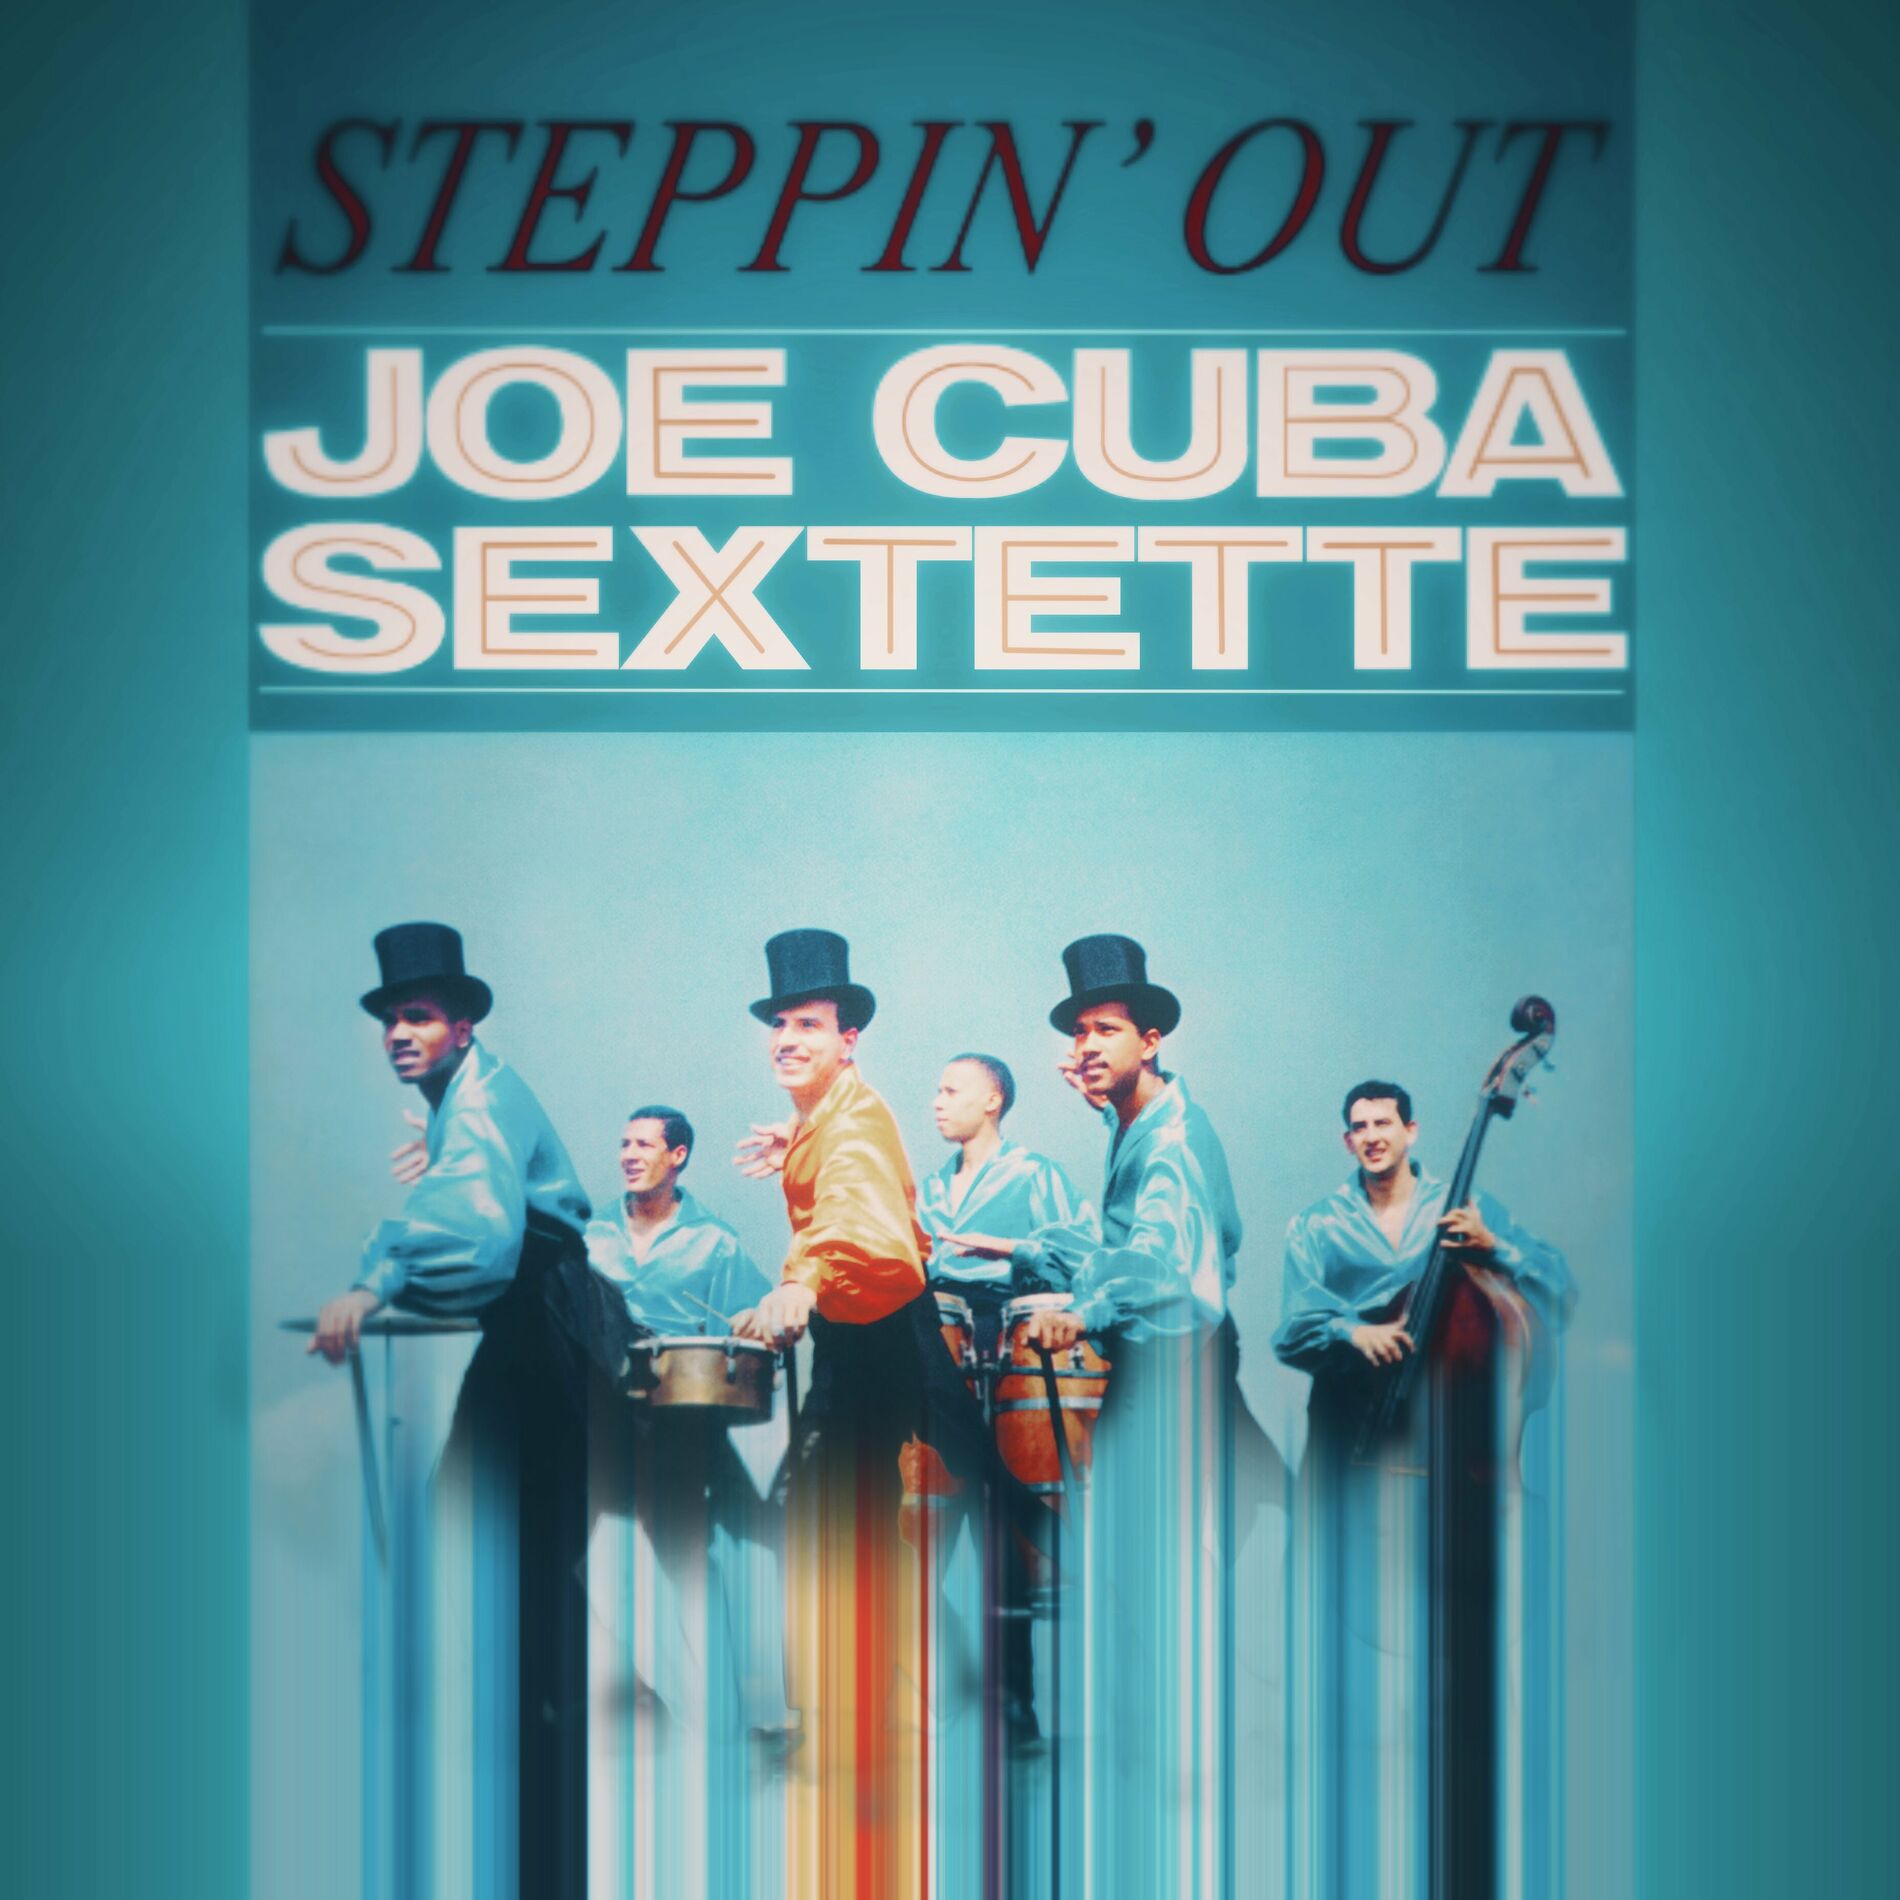 Joe Cuba Sextette - Steppin' Out: lyrics and songs | Deezer